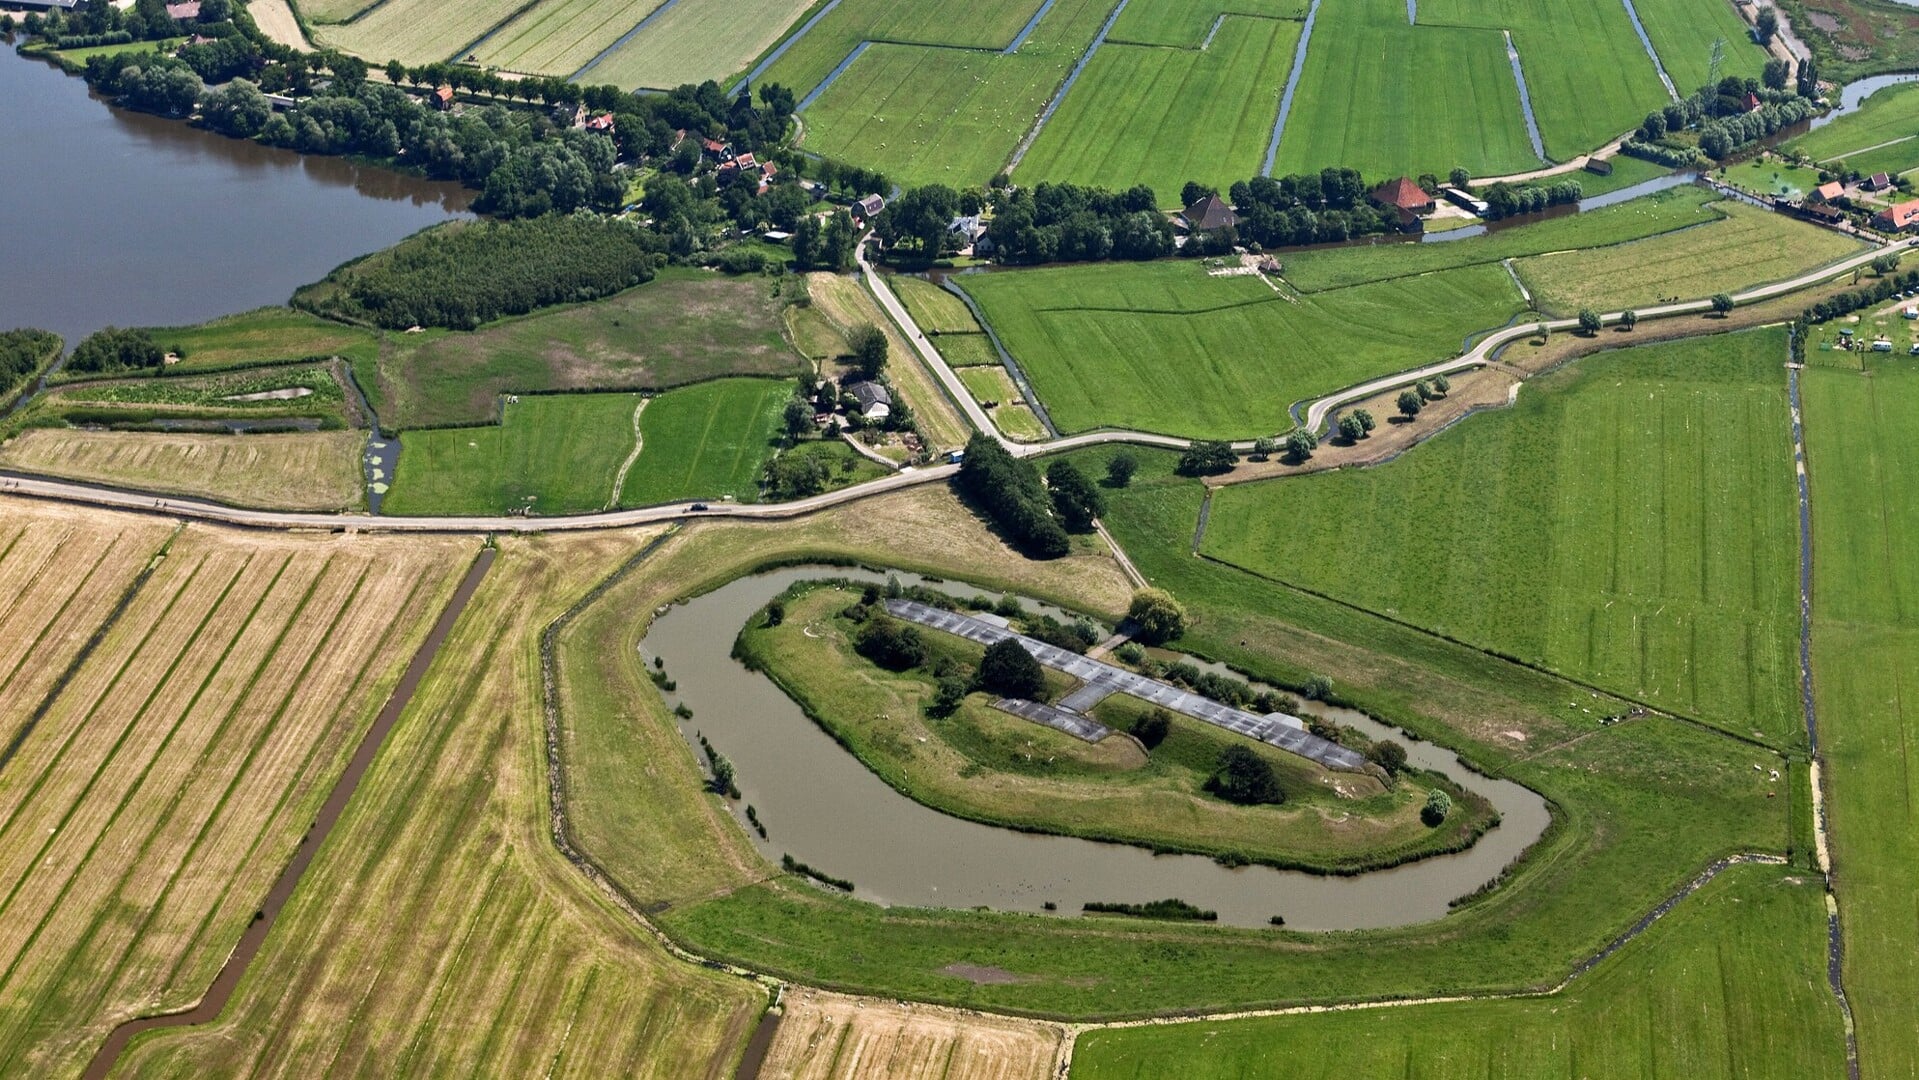  Gidsen van Landschap Noord-Holland geven zaterdag 20 april een extra rondleiding door het Fort bij Krommeniedijk. 